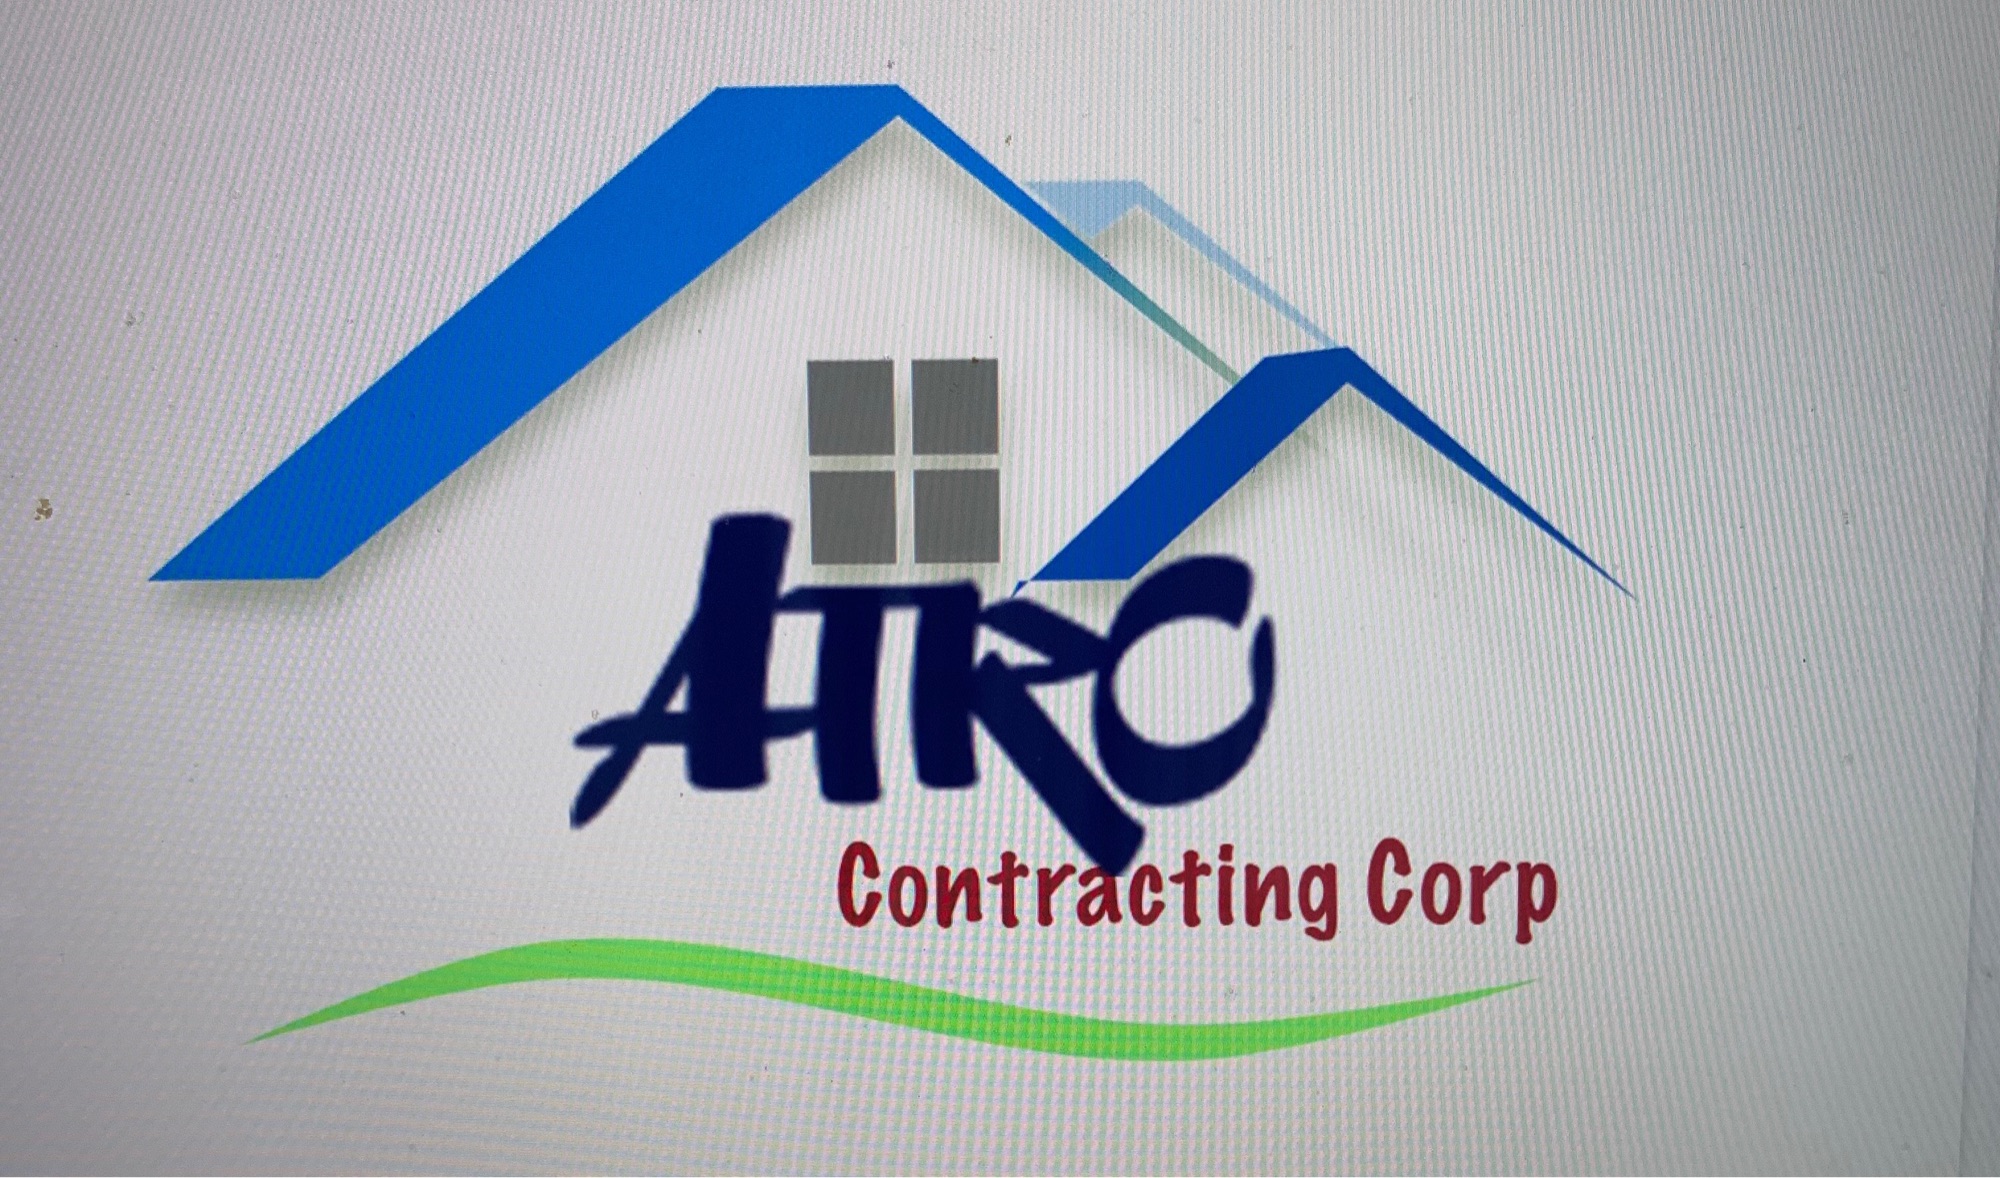 Atro Contracting, Corp. Logo